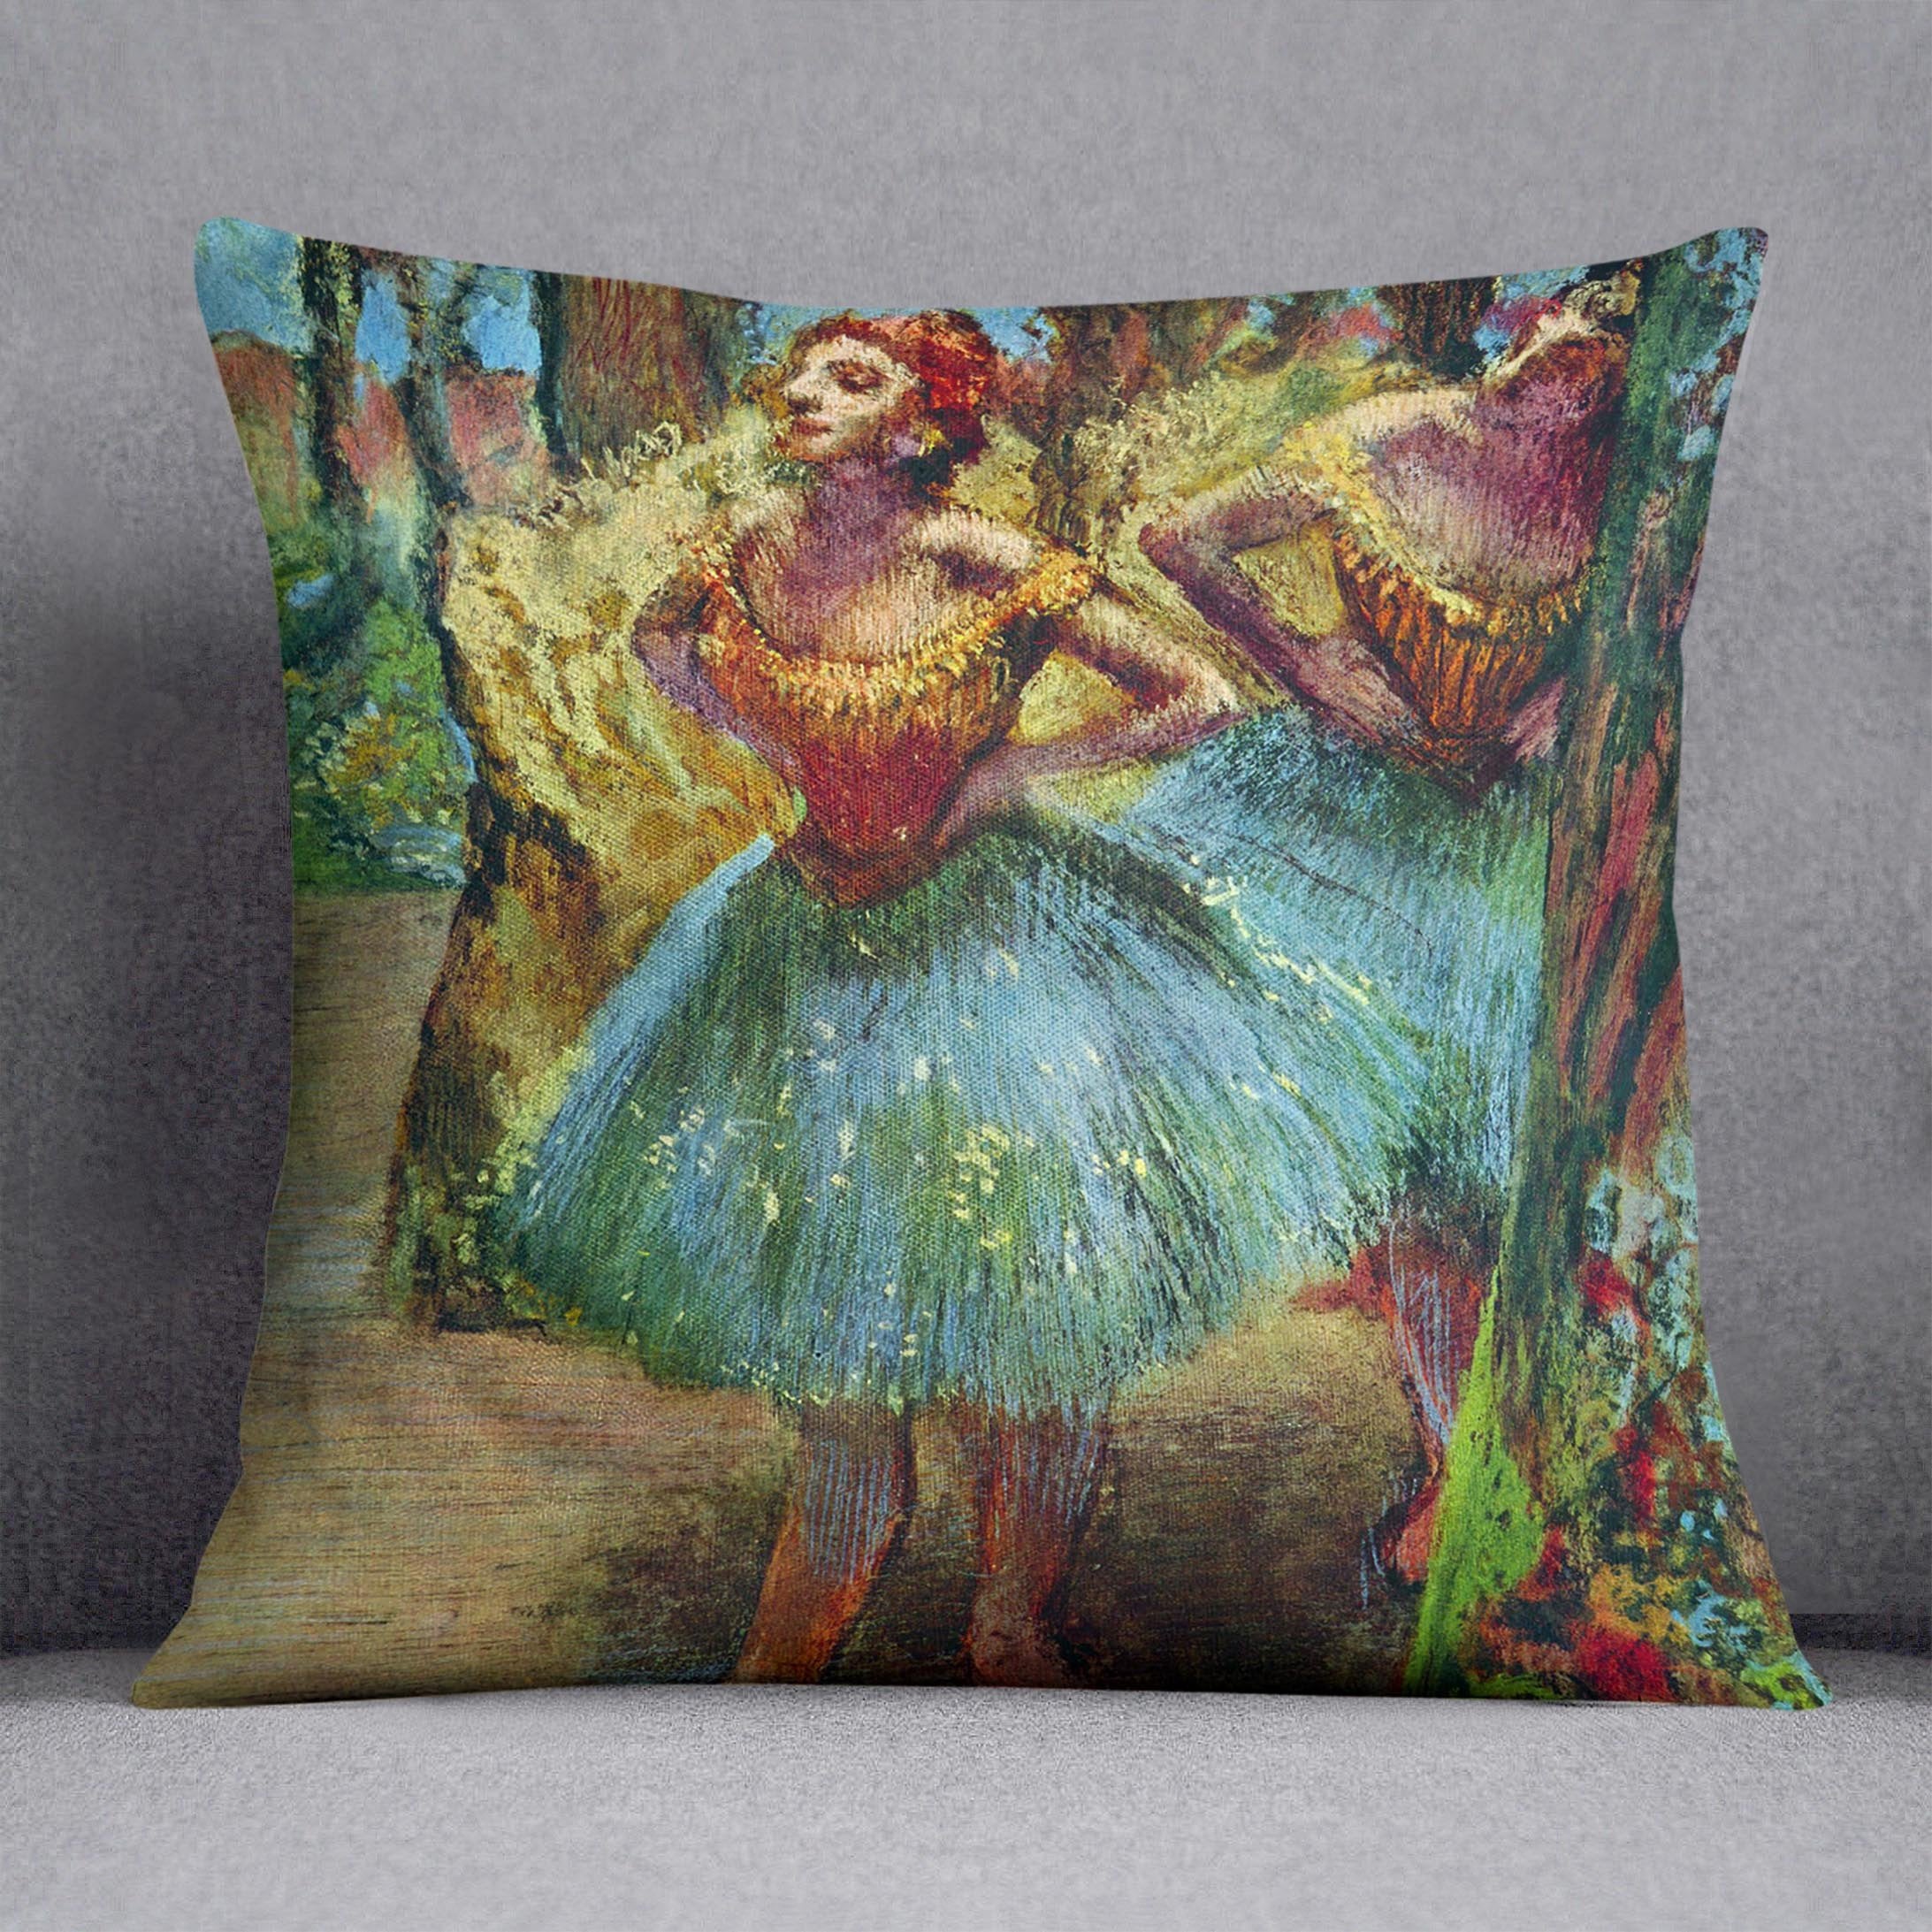 Dancers 2 by Degas Cushion